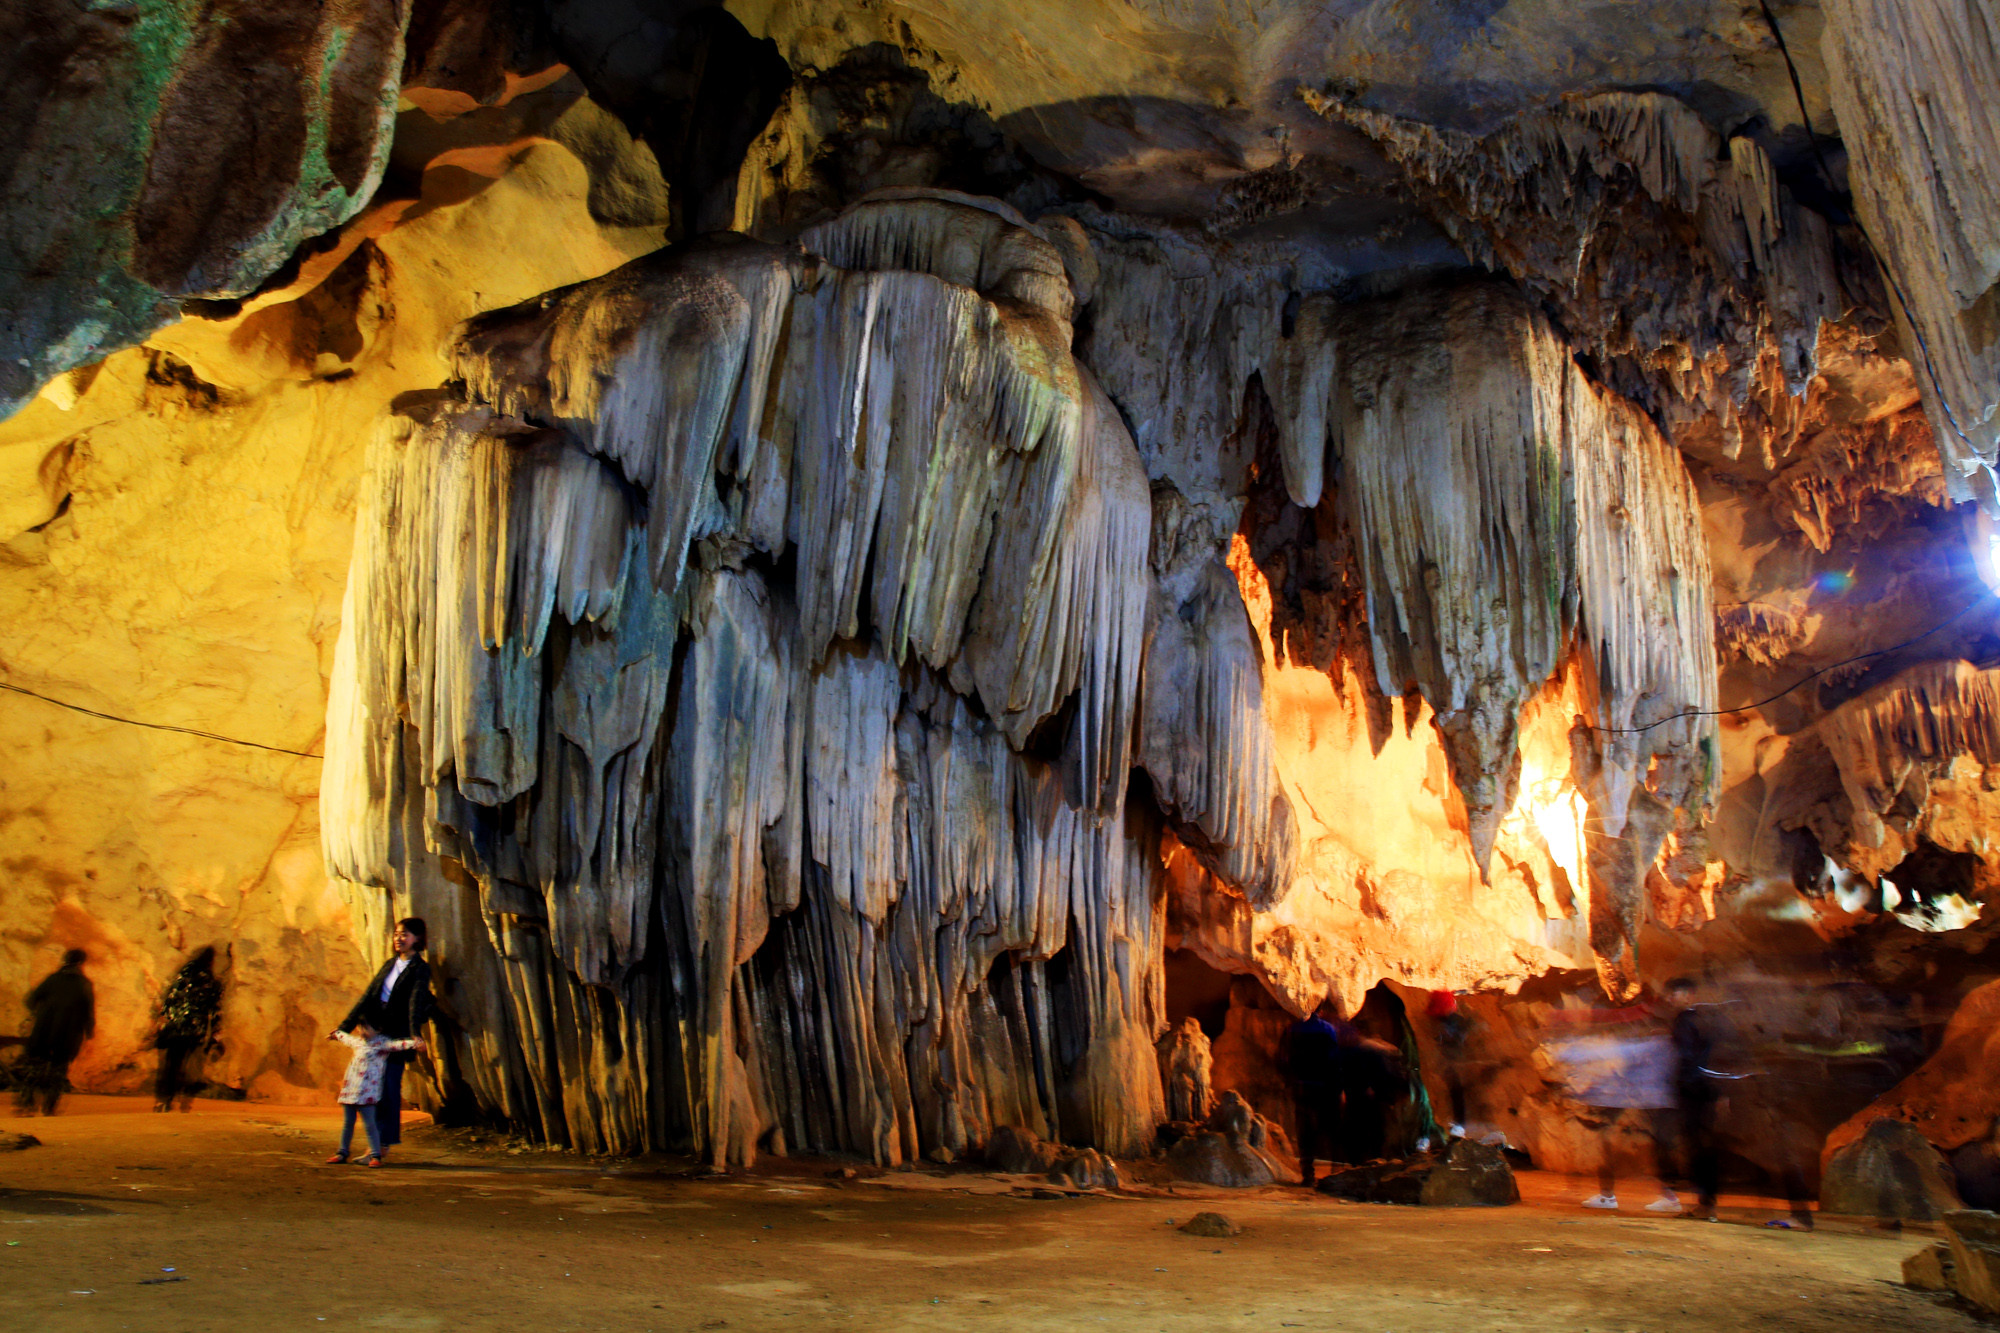 Điểm đặc sắc bậc nhất của lễ hội Hang Bua chính là hang Bua, hang Bua được xem là hang động đẹp bậc nhất ở Nghệ An. Hang Bua gắn với huyền sử dân gian của đồng bào Thái trên địa bàn, trong đó có chuyện về những mối tình của chàng Khủn Tinh - một trong những anh hùng trong sử thi của người Thái. 